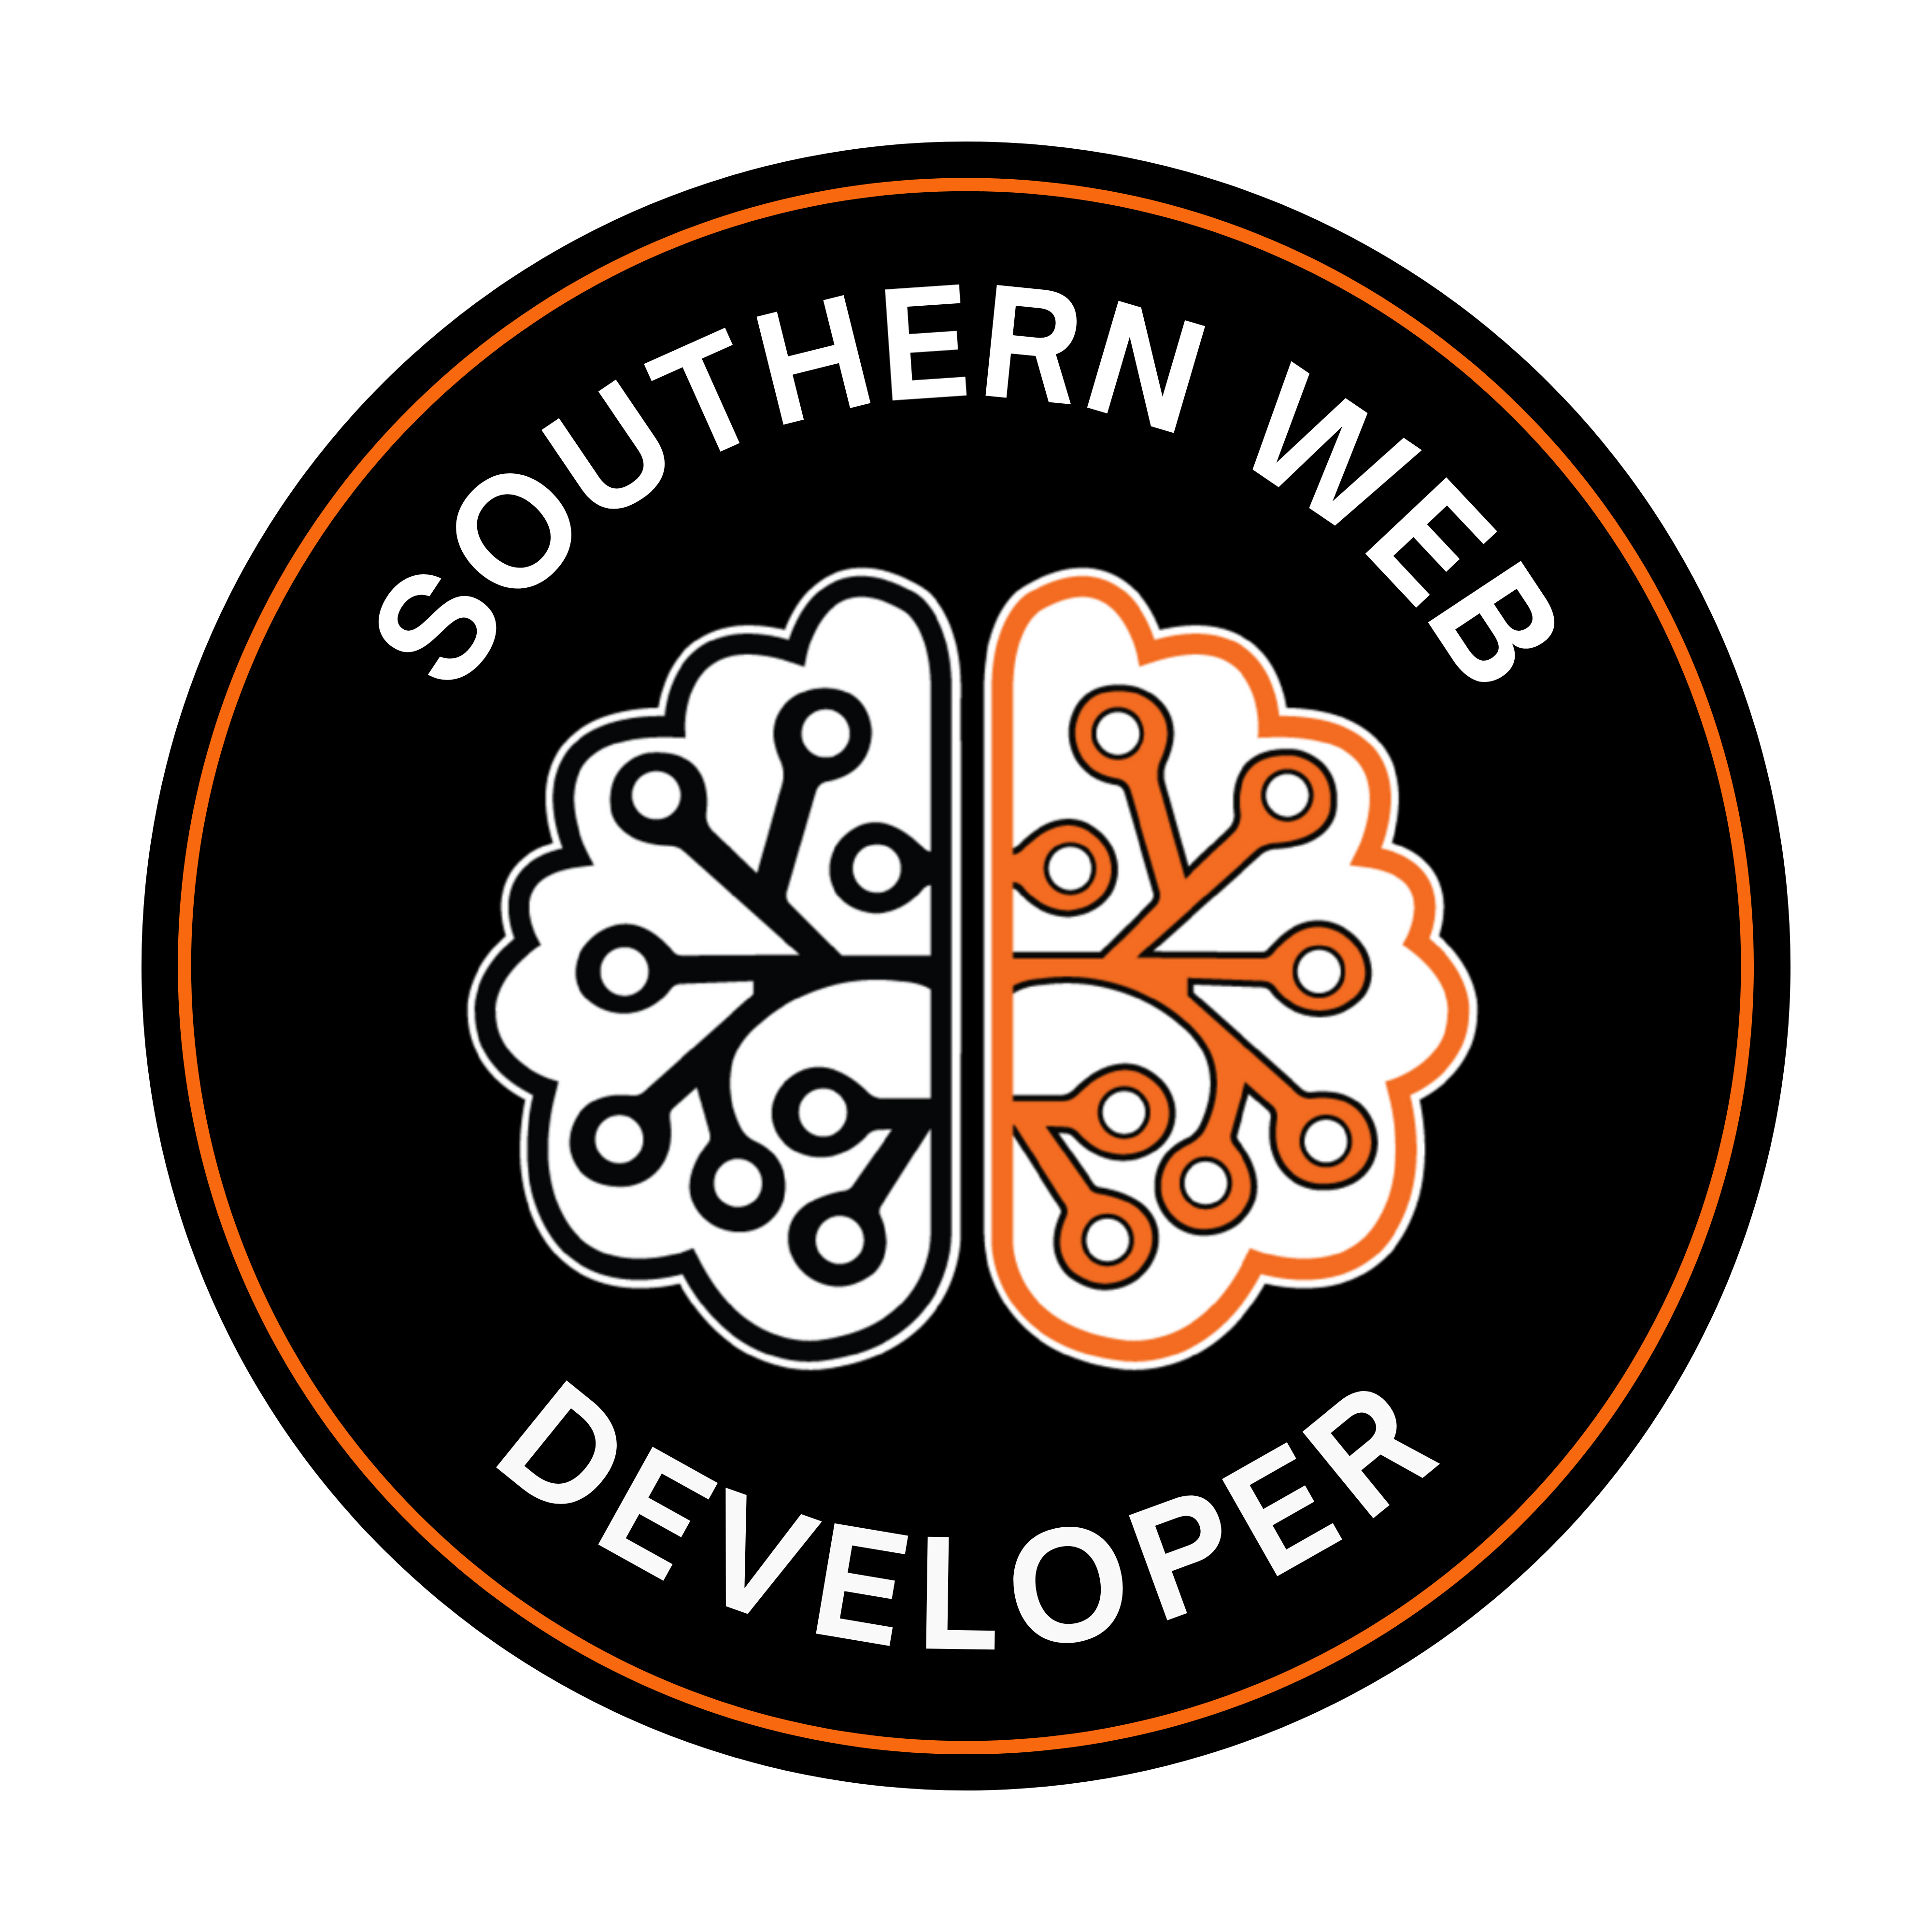 Southern Web Developer